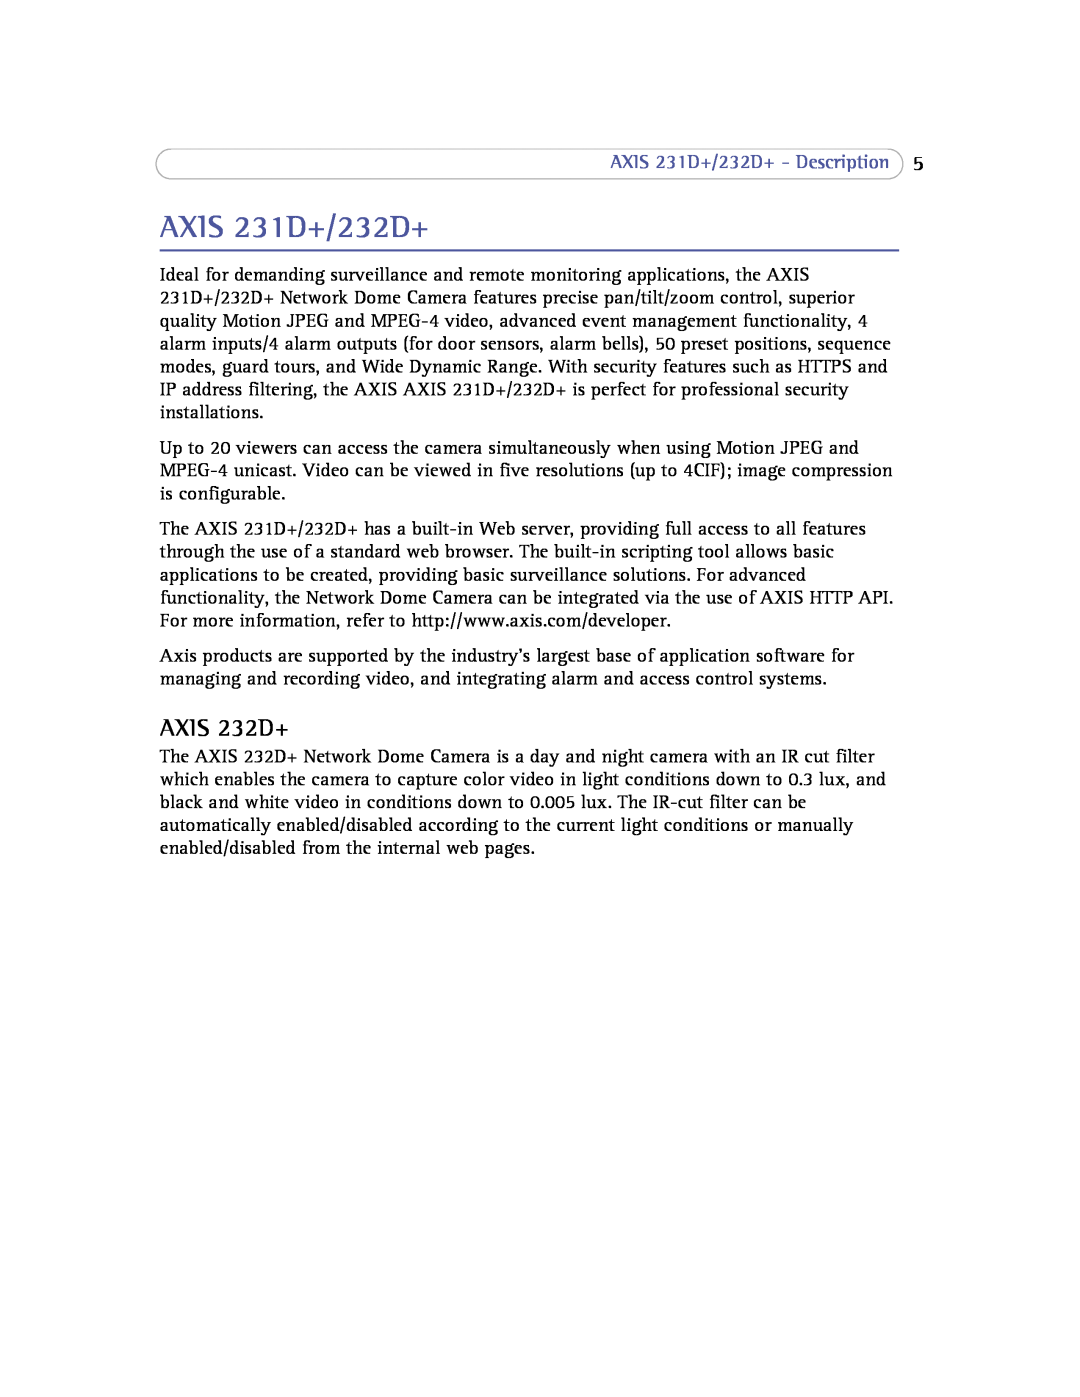 Axis Communications 232d+ user manual AXIS 232D+, AXIS 231D+/232D+ - Description 